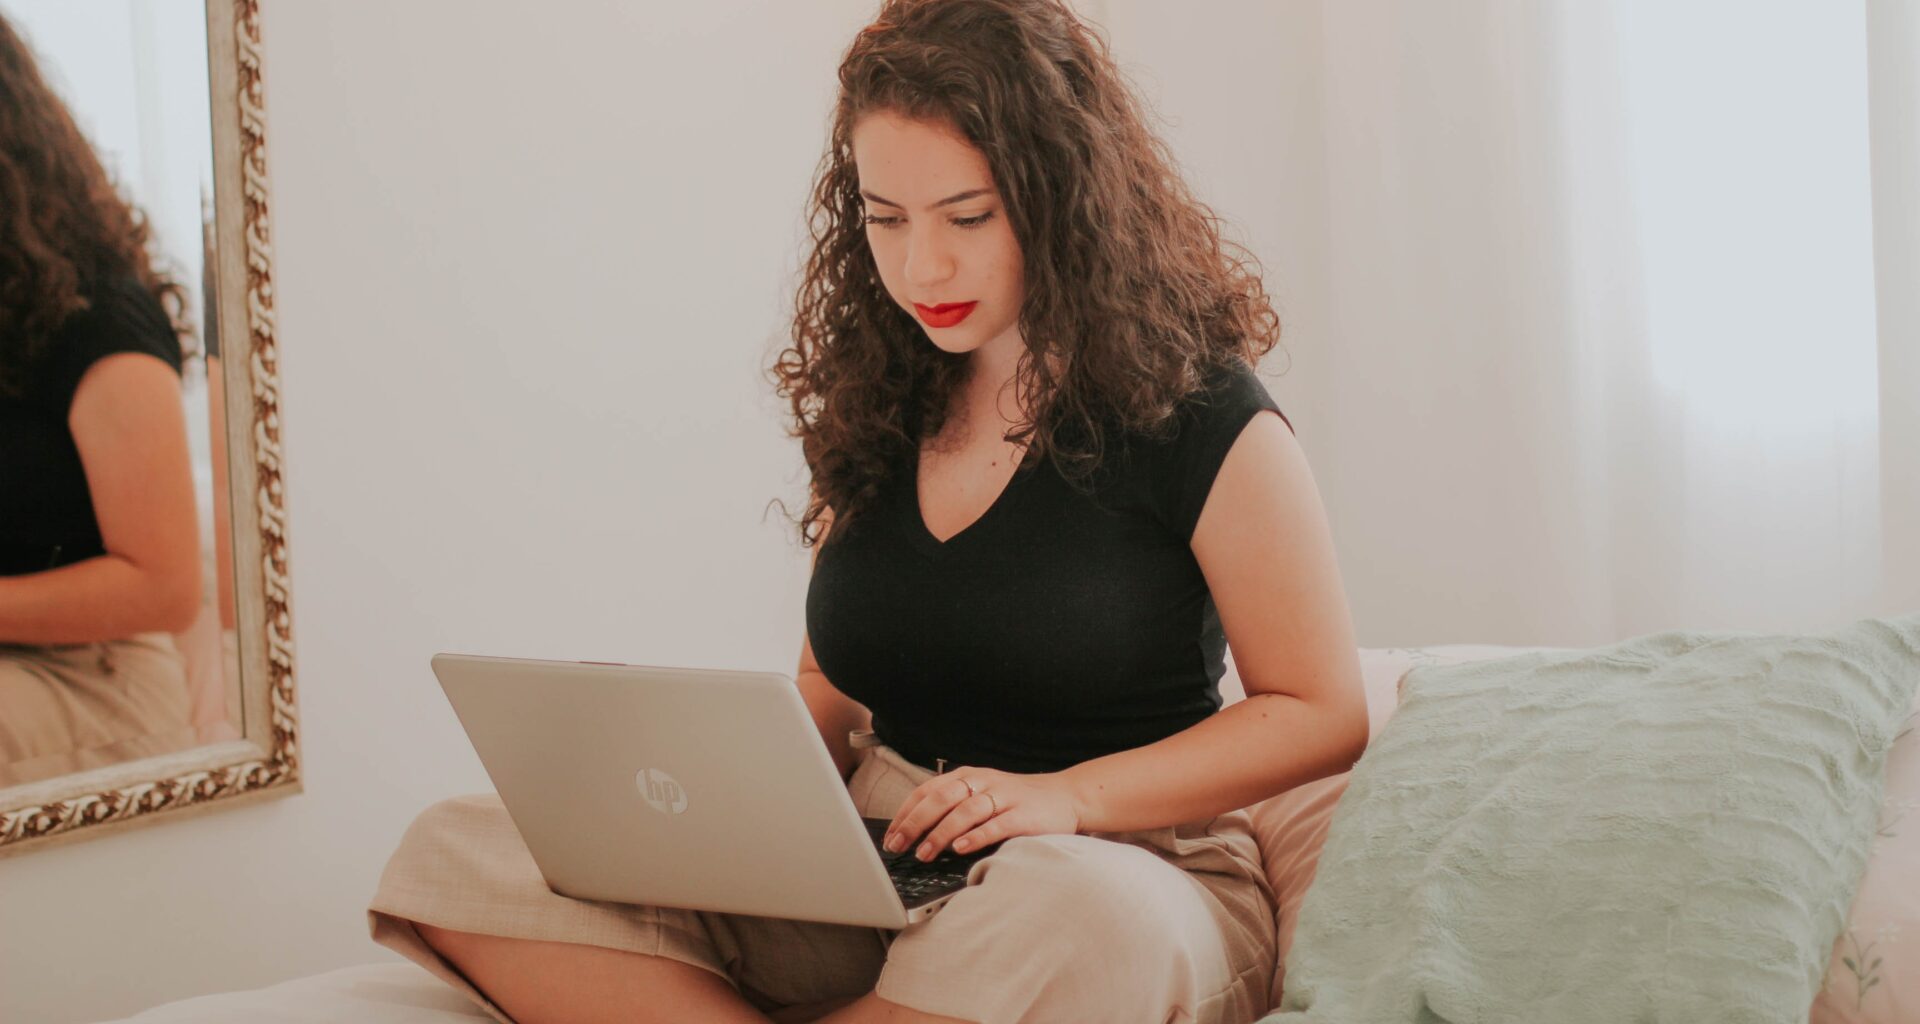 mujer con cabello rizado y labios pintados de rojo, blusa negra y pantalones claros, está sentada sobre la cama escribiendo en la computadora